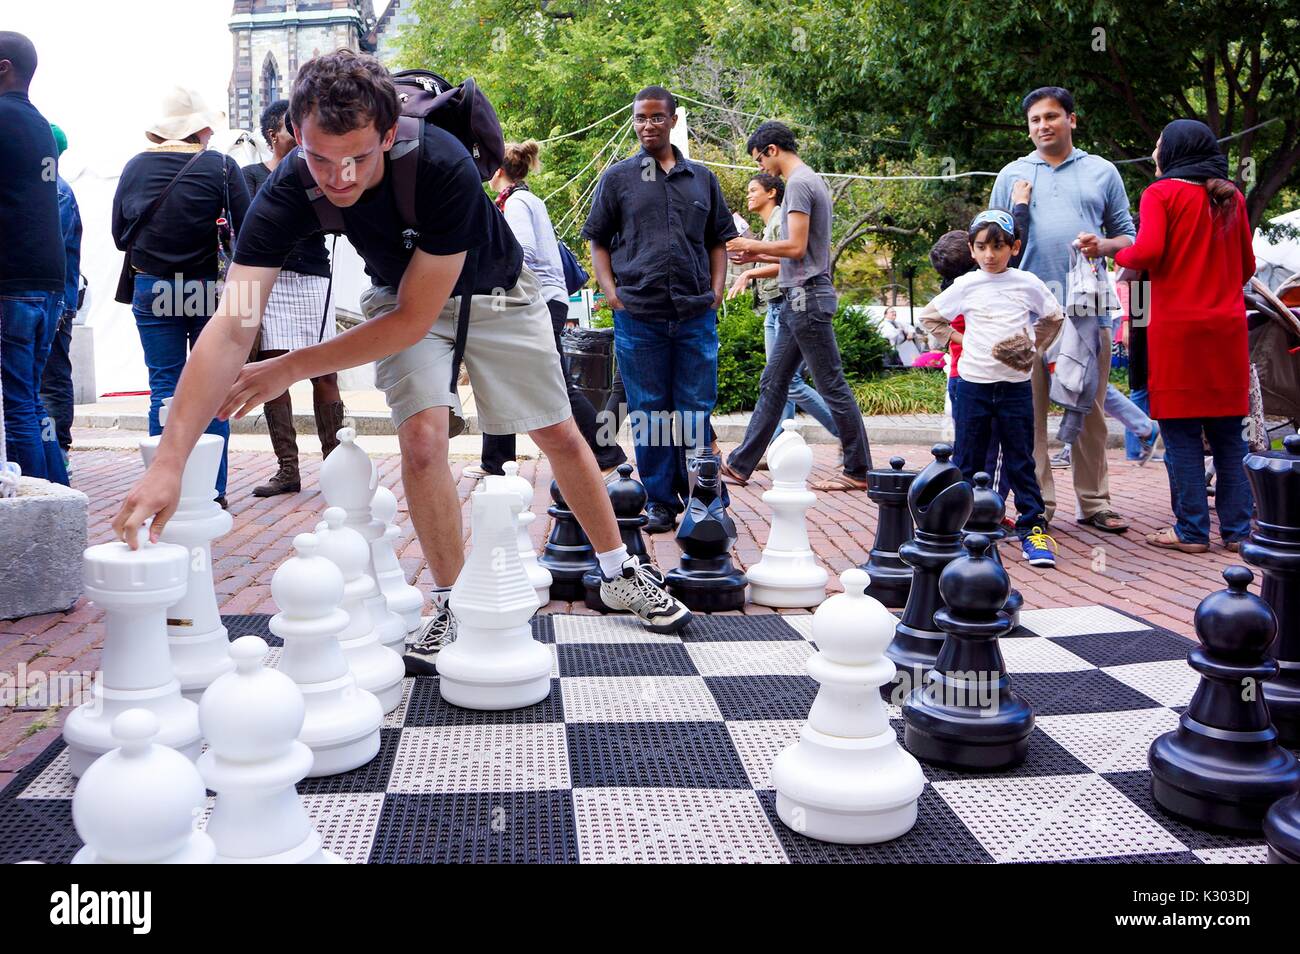 Por qué el ajedrez es una estrategia de vida?